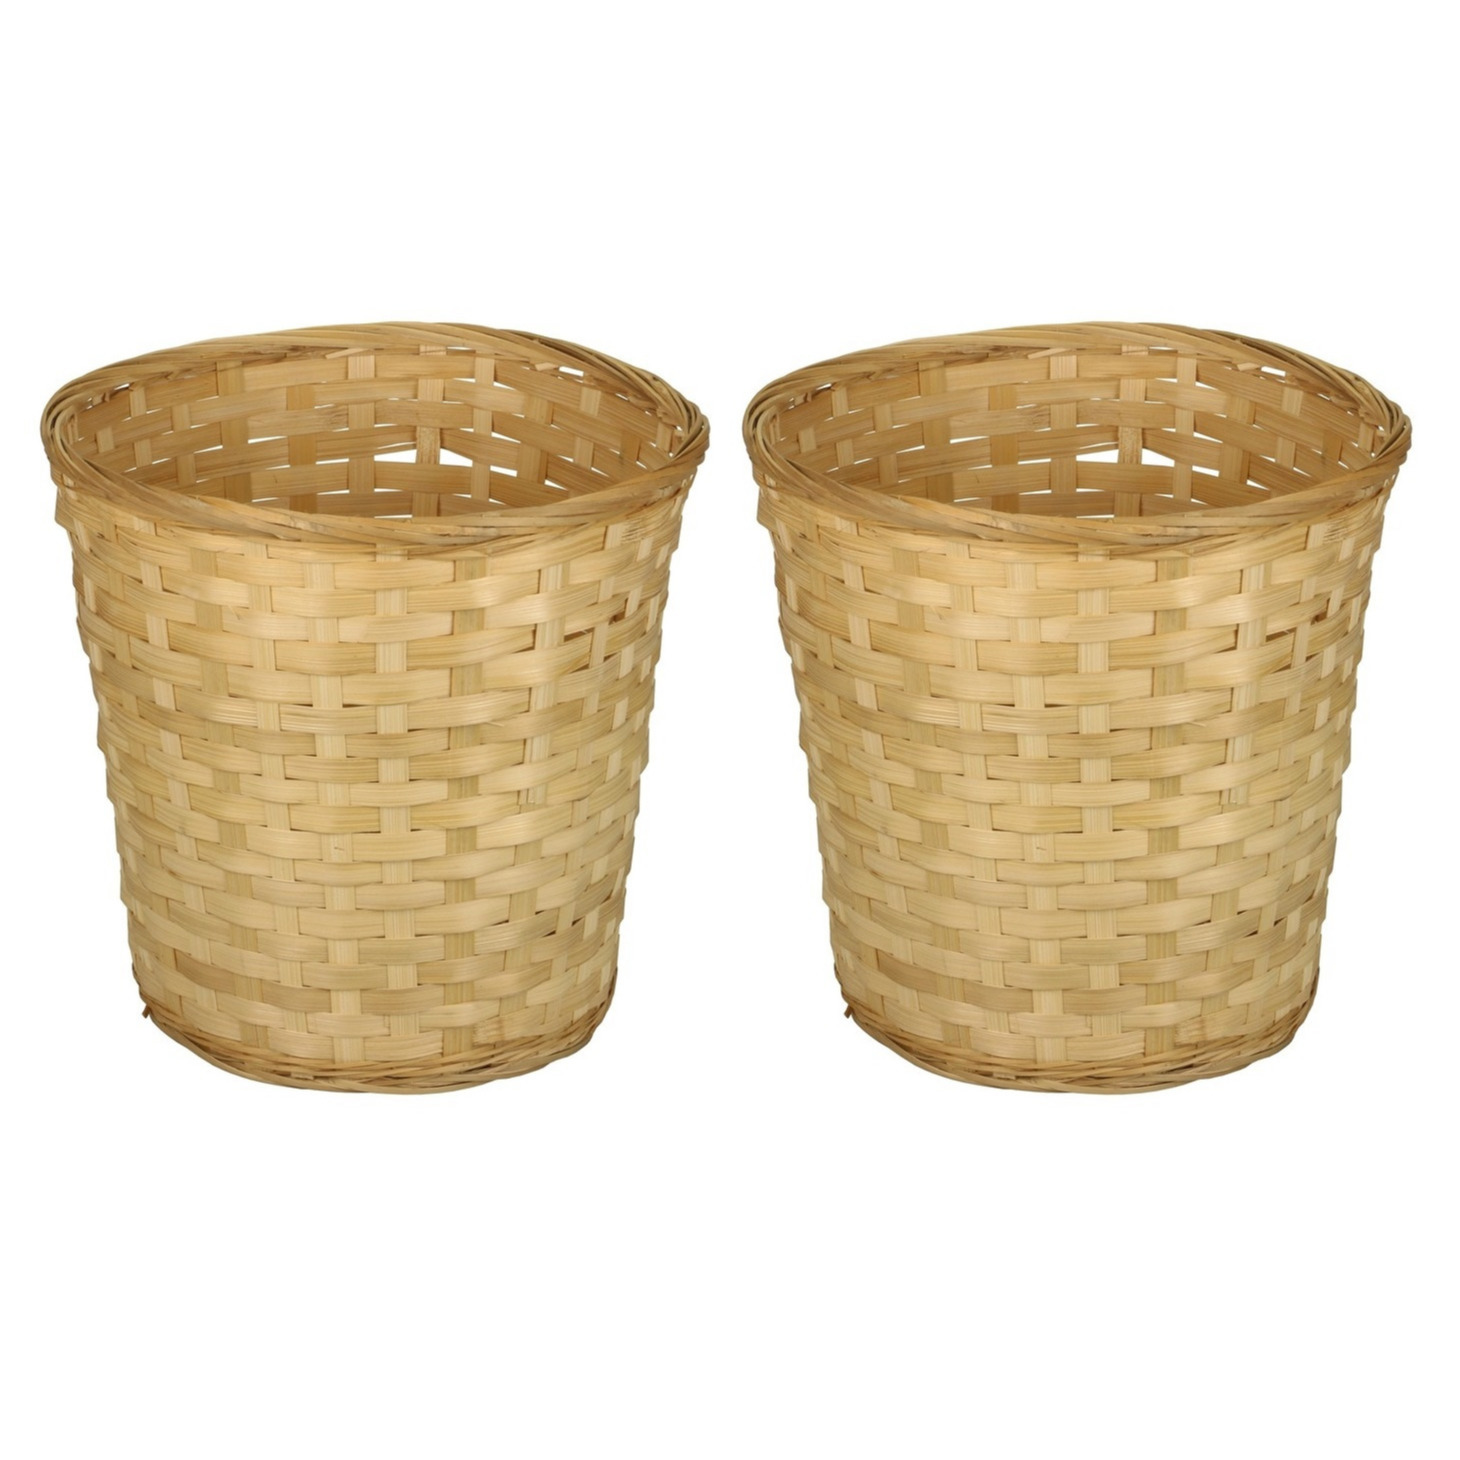 Pakket van 4x stuks ronde rieten-bamboe decoratie mandjes-manden 26 x 24 cm